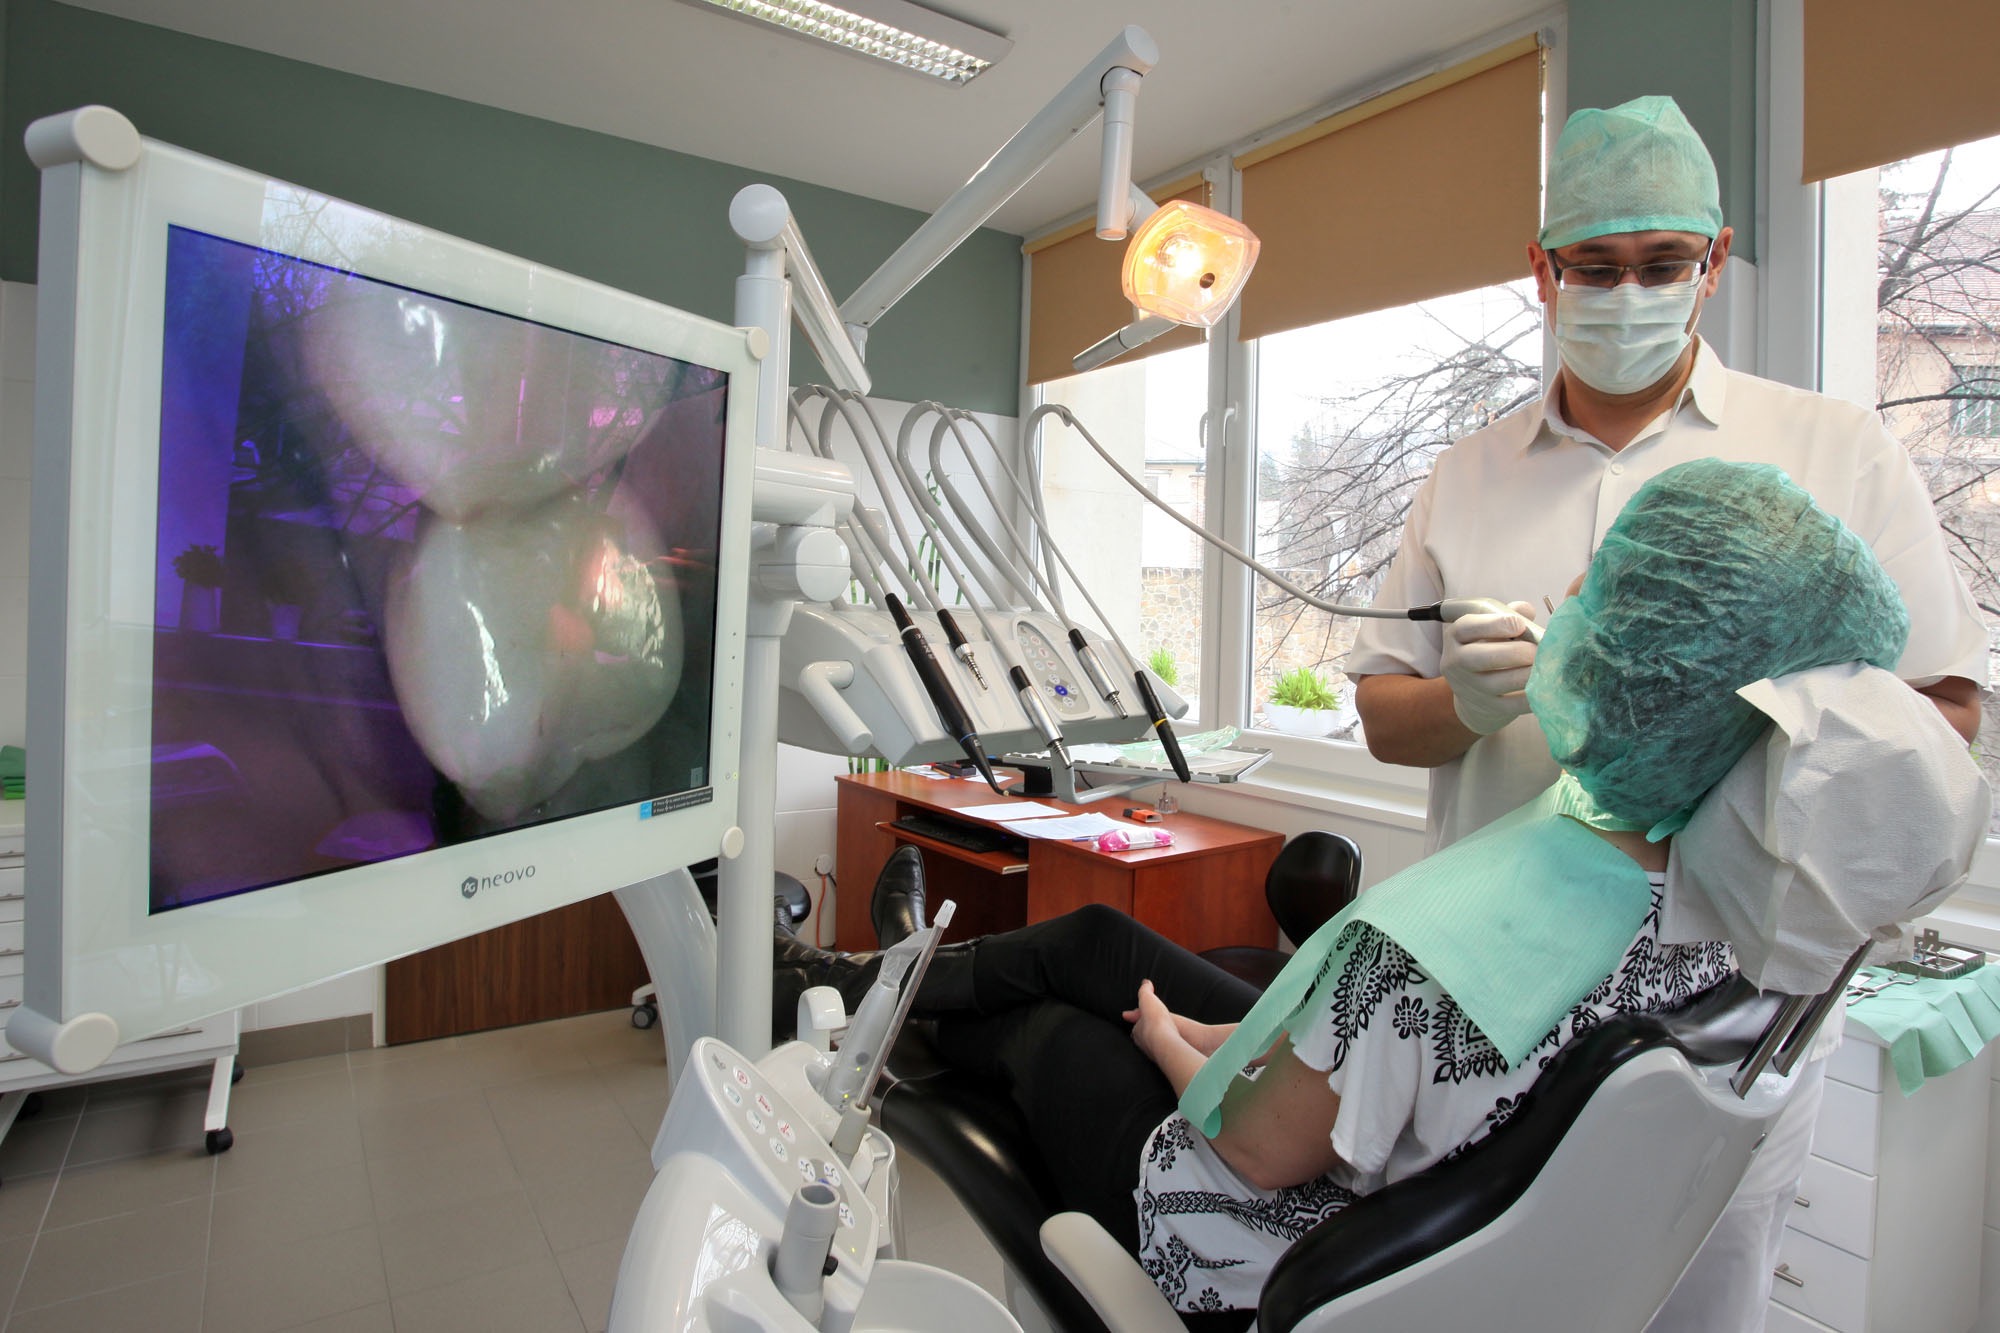 Hiányzó fogak pótlása fogászati implantátumok beépítésével, fogbeültetés - Kútvölgyi Premium Dental fogászat, Budapest